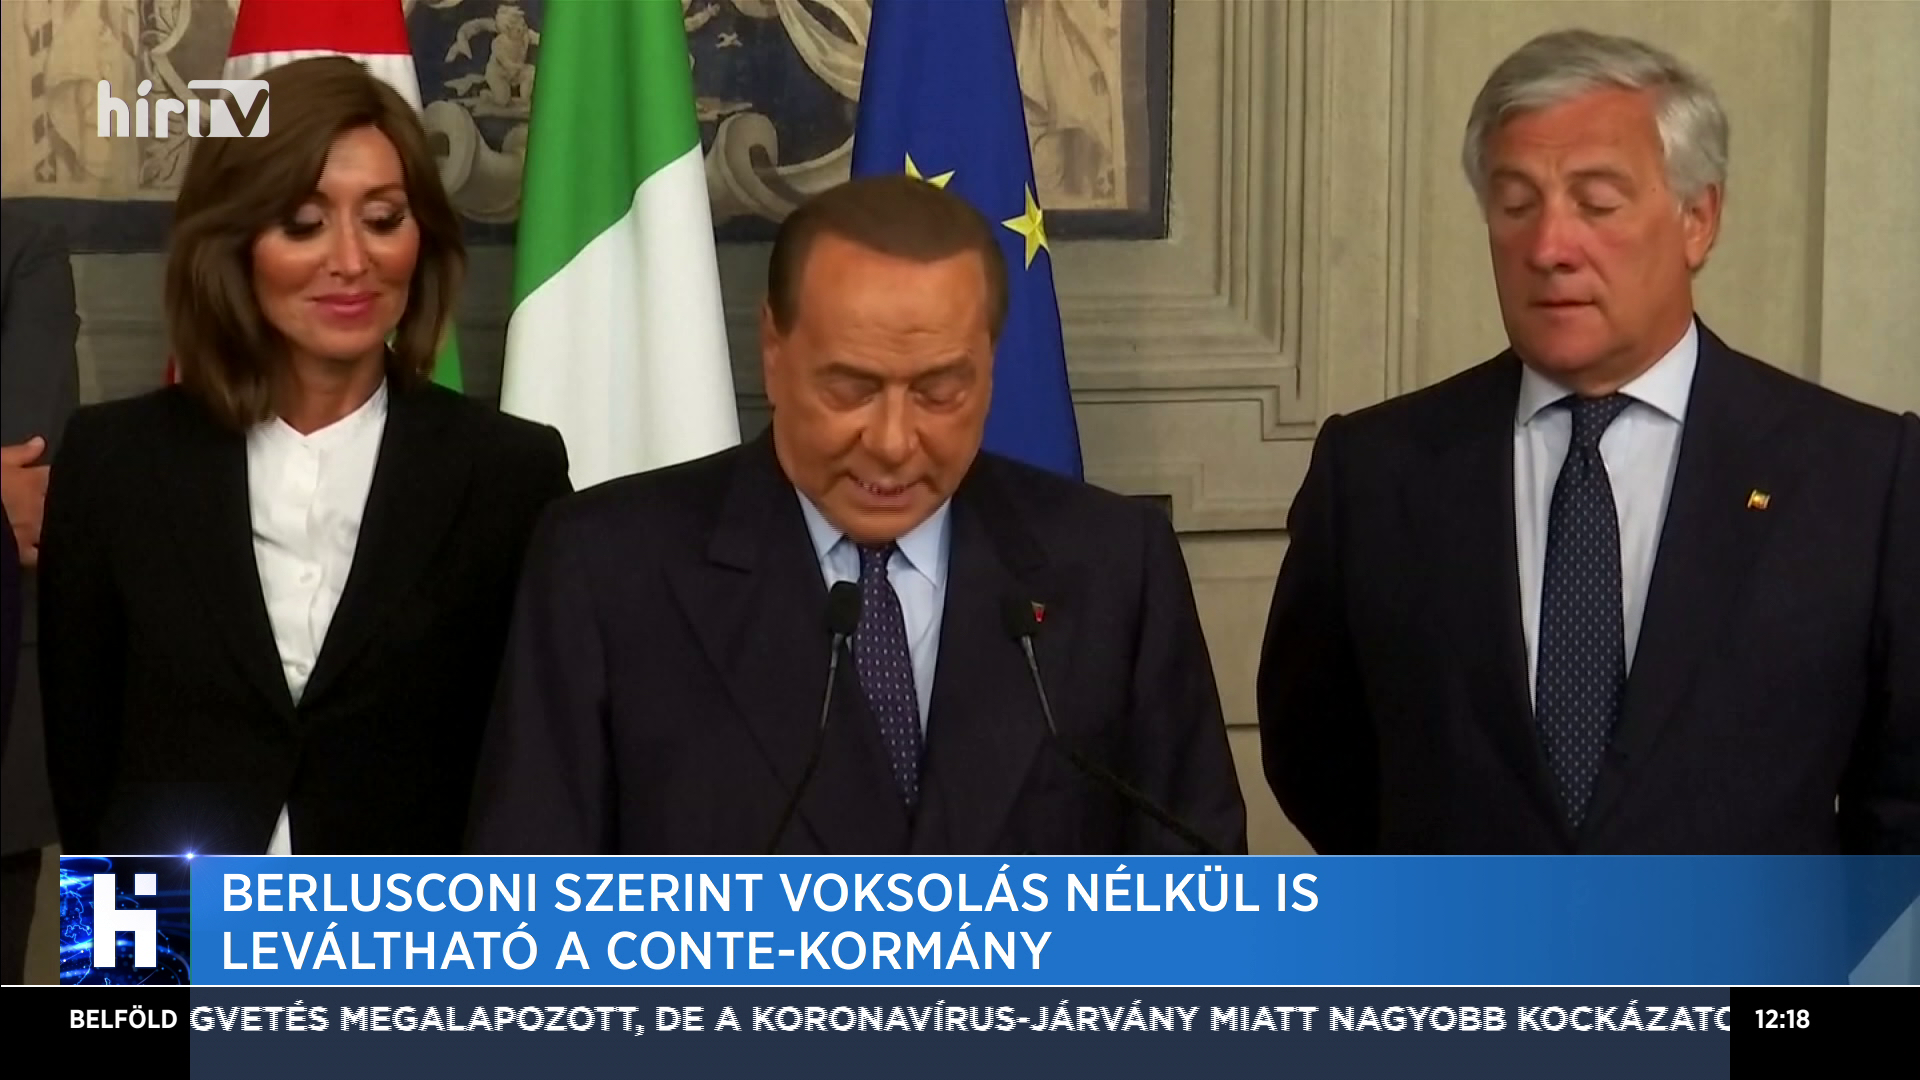 Berlusconi szerint voksolás nélkül is leváltható a Conte-kormány